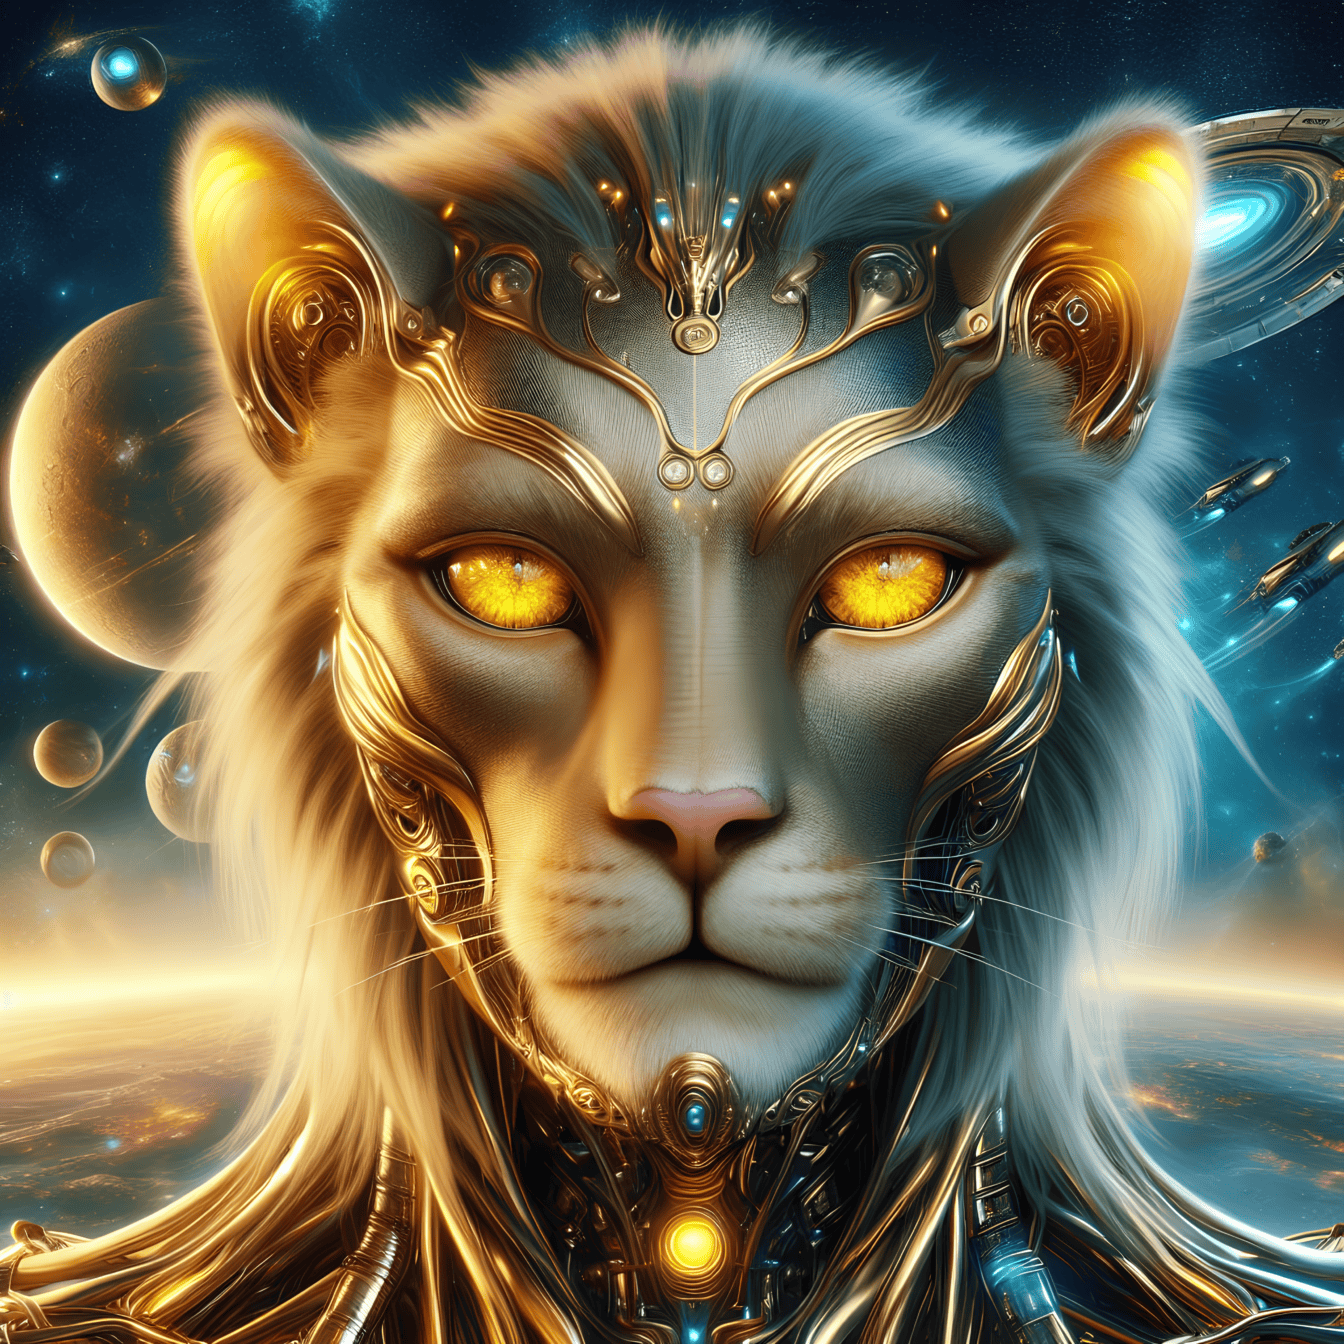 Muotokuva kultaisesta jumaluudesta, maapallon ulkopuolisesta leijonakyborgista toiselta planeetalta